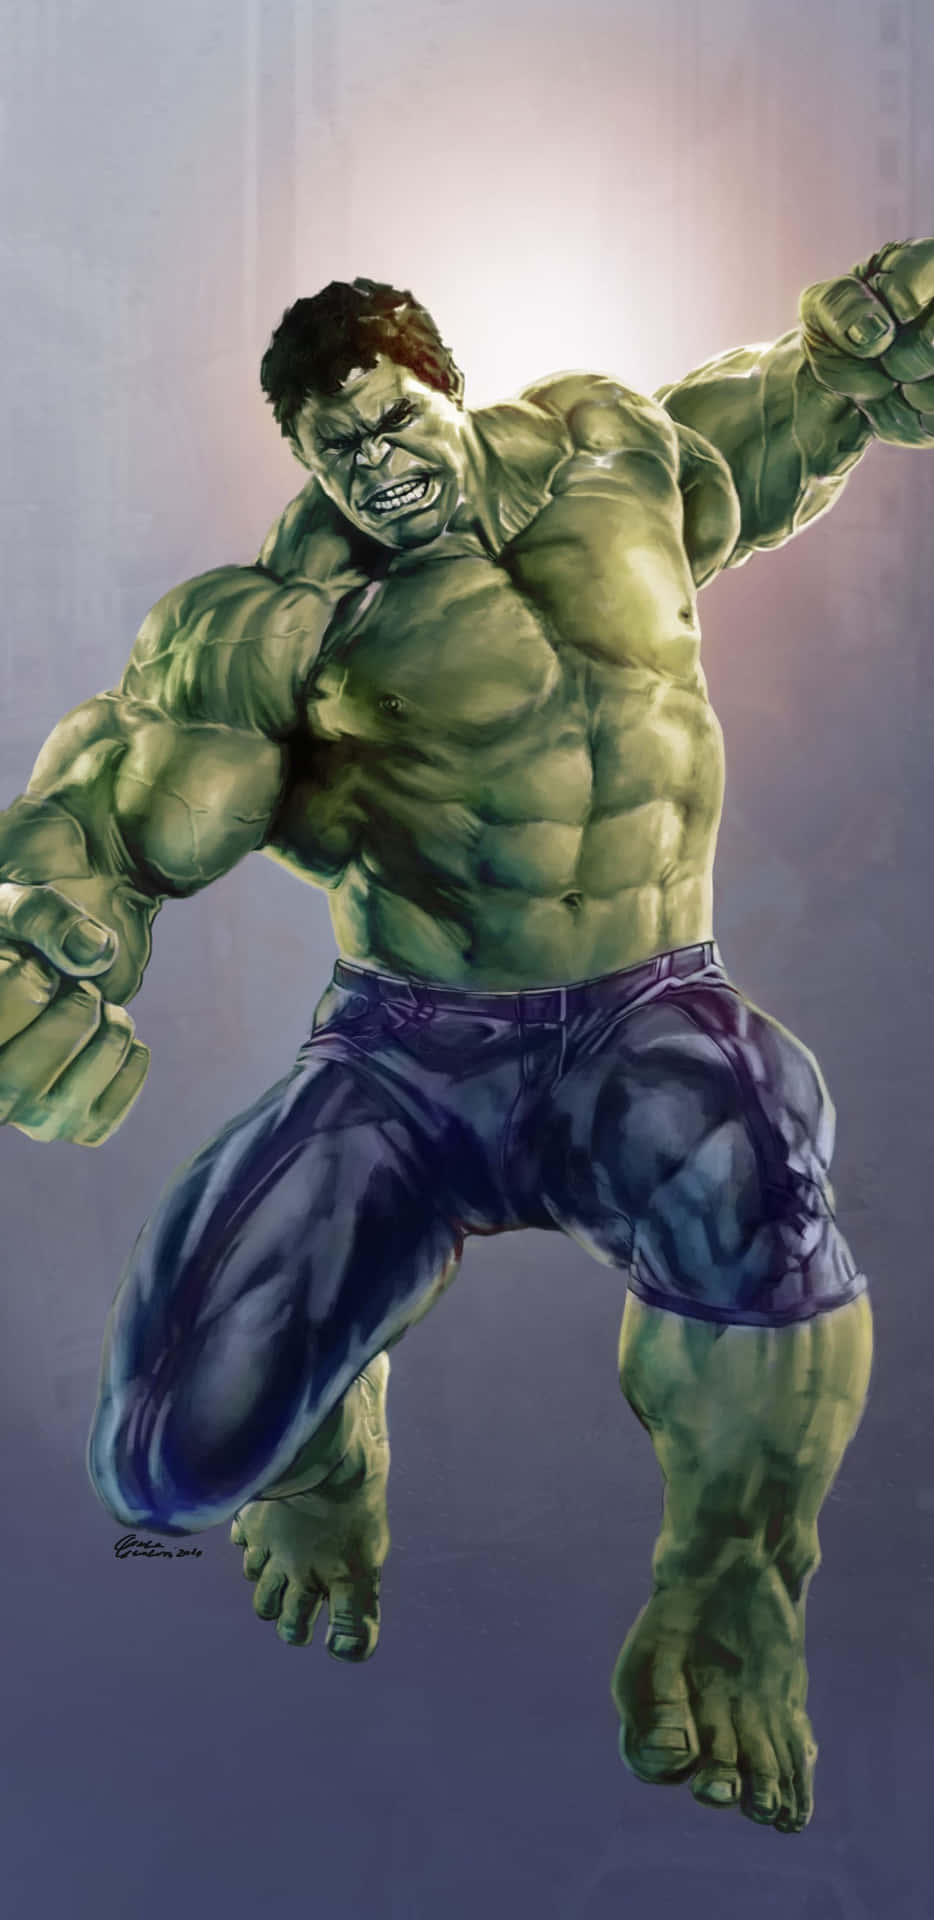 Elincreíble Hulk